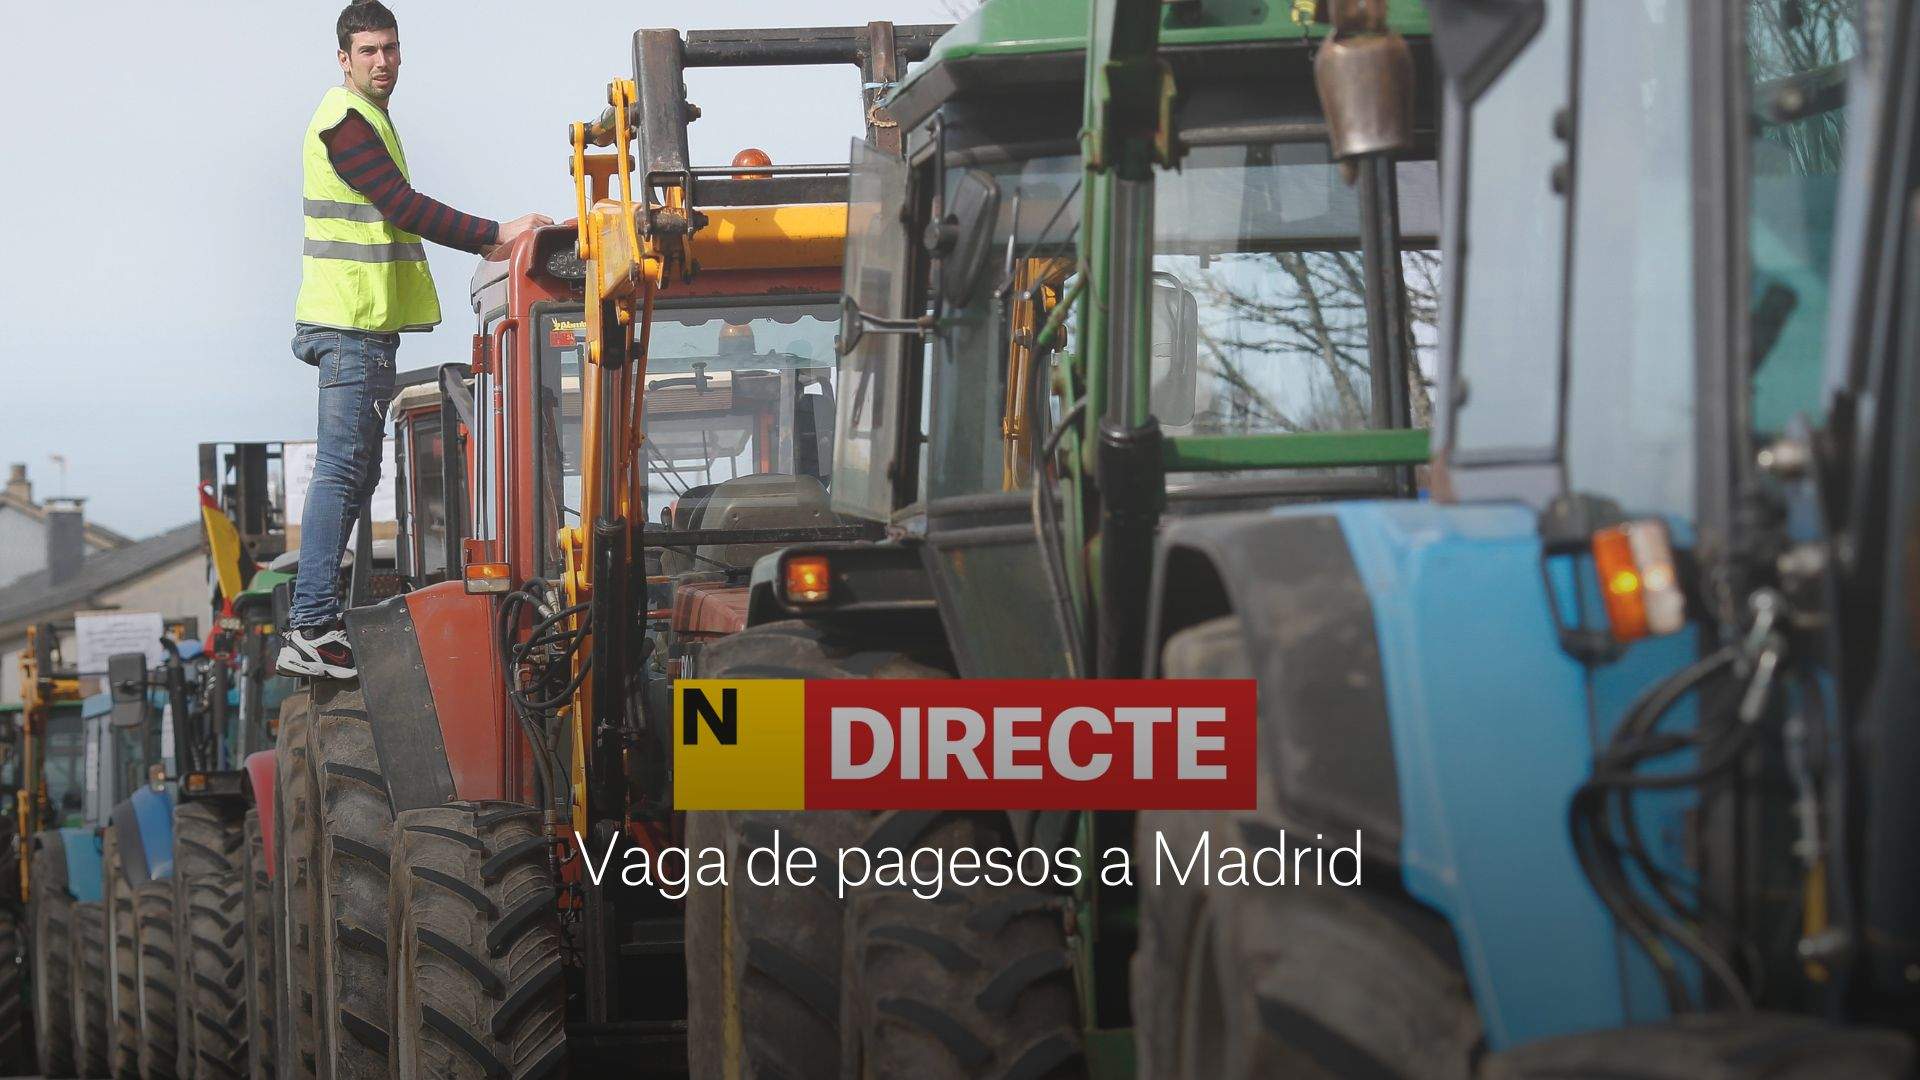 Huelga de agricultores hoy en Madrid, DIRECTO | Última hora de los tractores y las calles cortadas